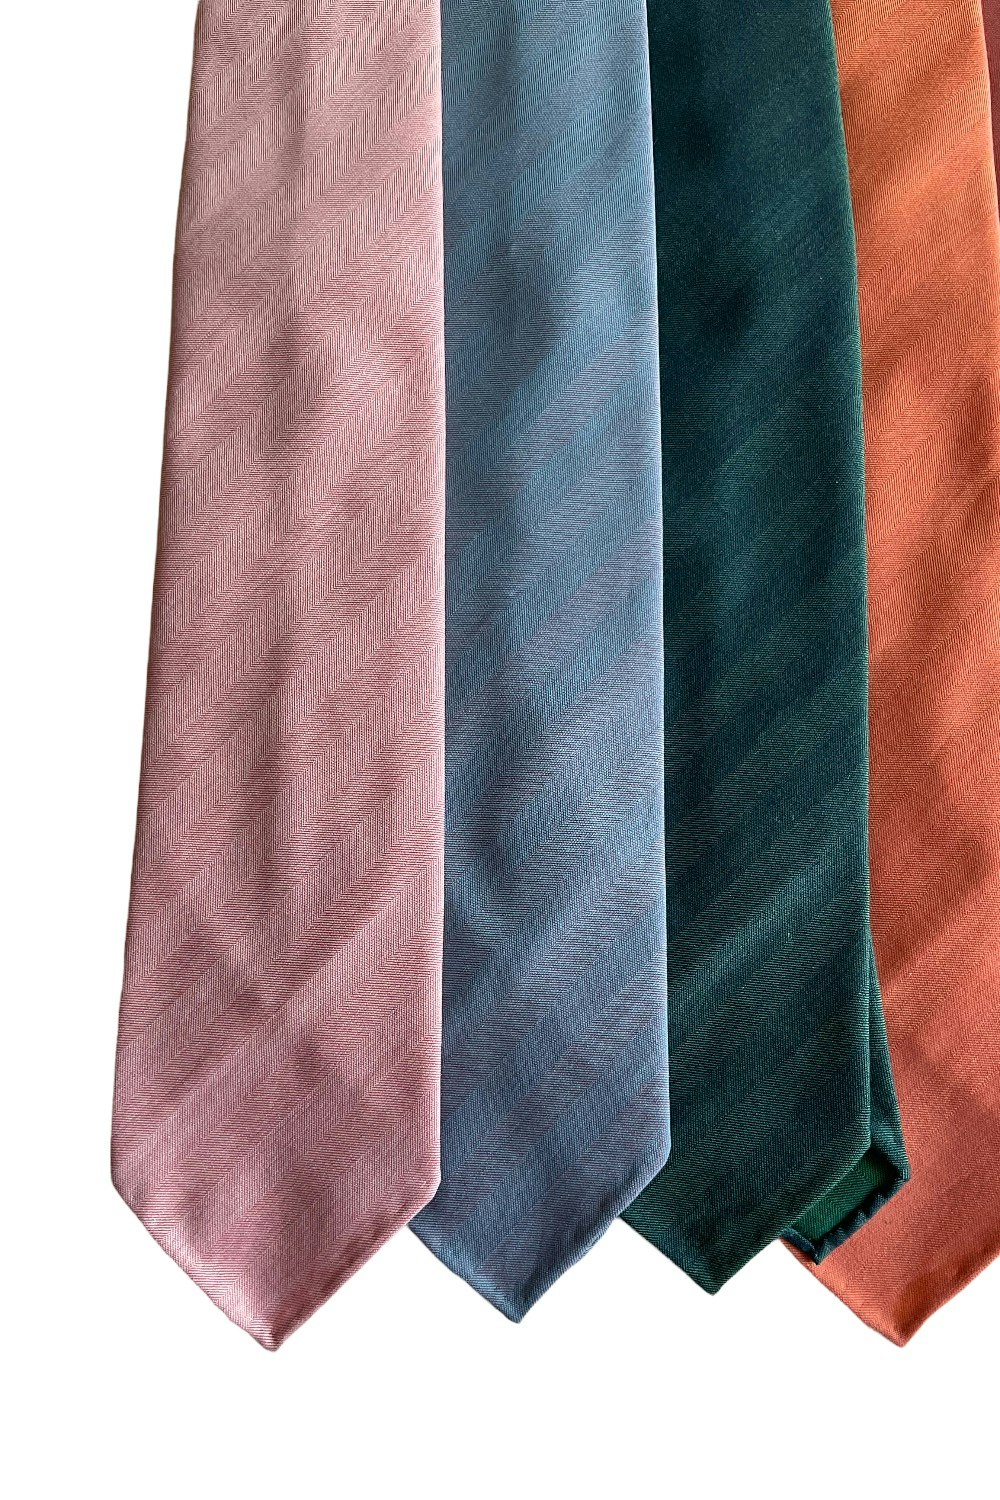 Solaro Wool/Cotton Tie - Untipped - Dark Green